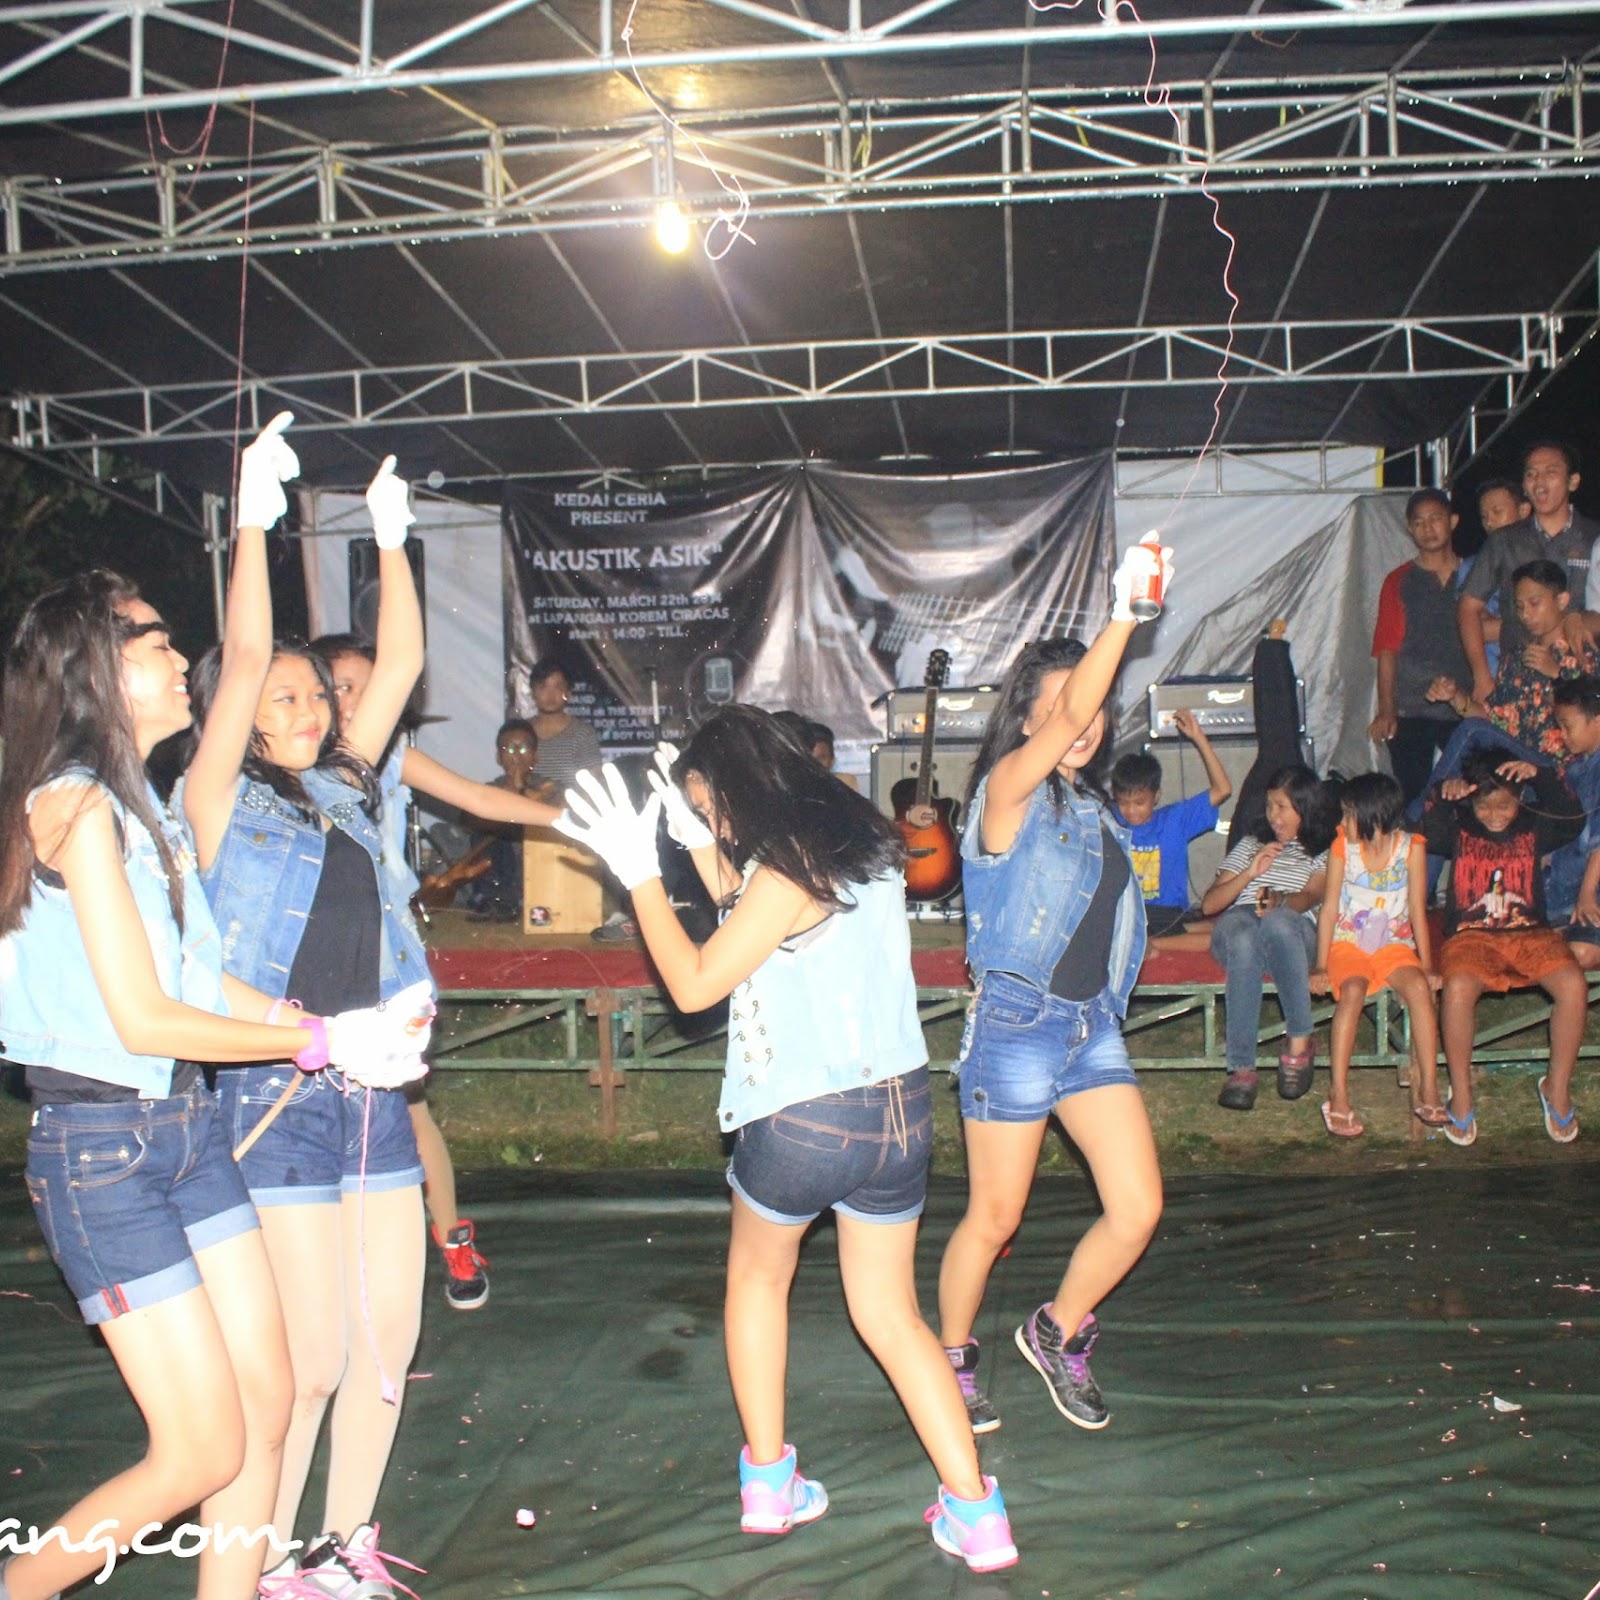 The Five Dance In Action at Kedai Ceria Kota Serang